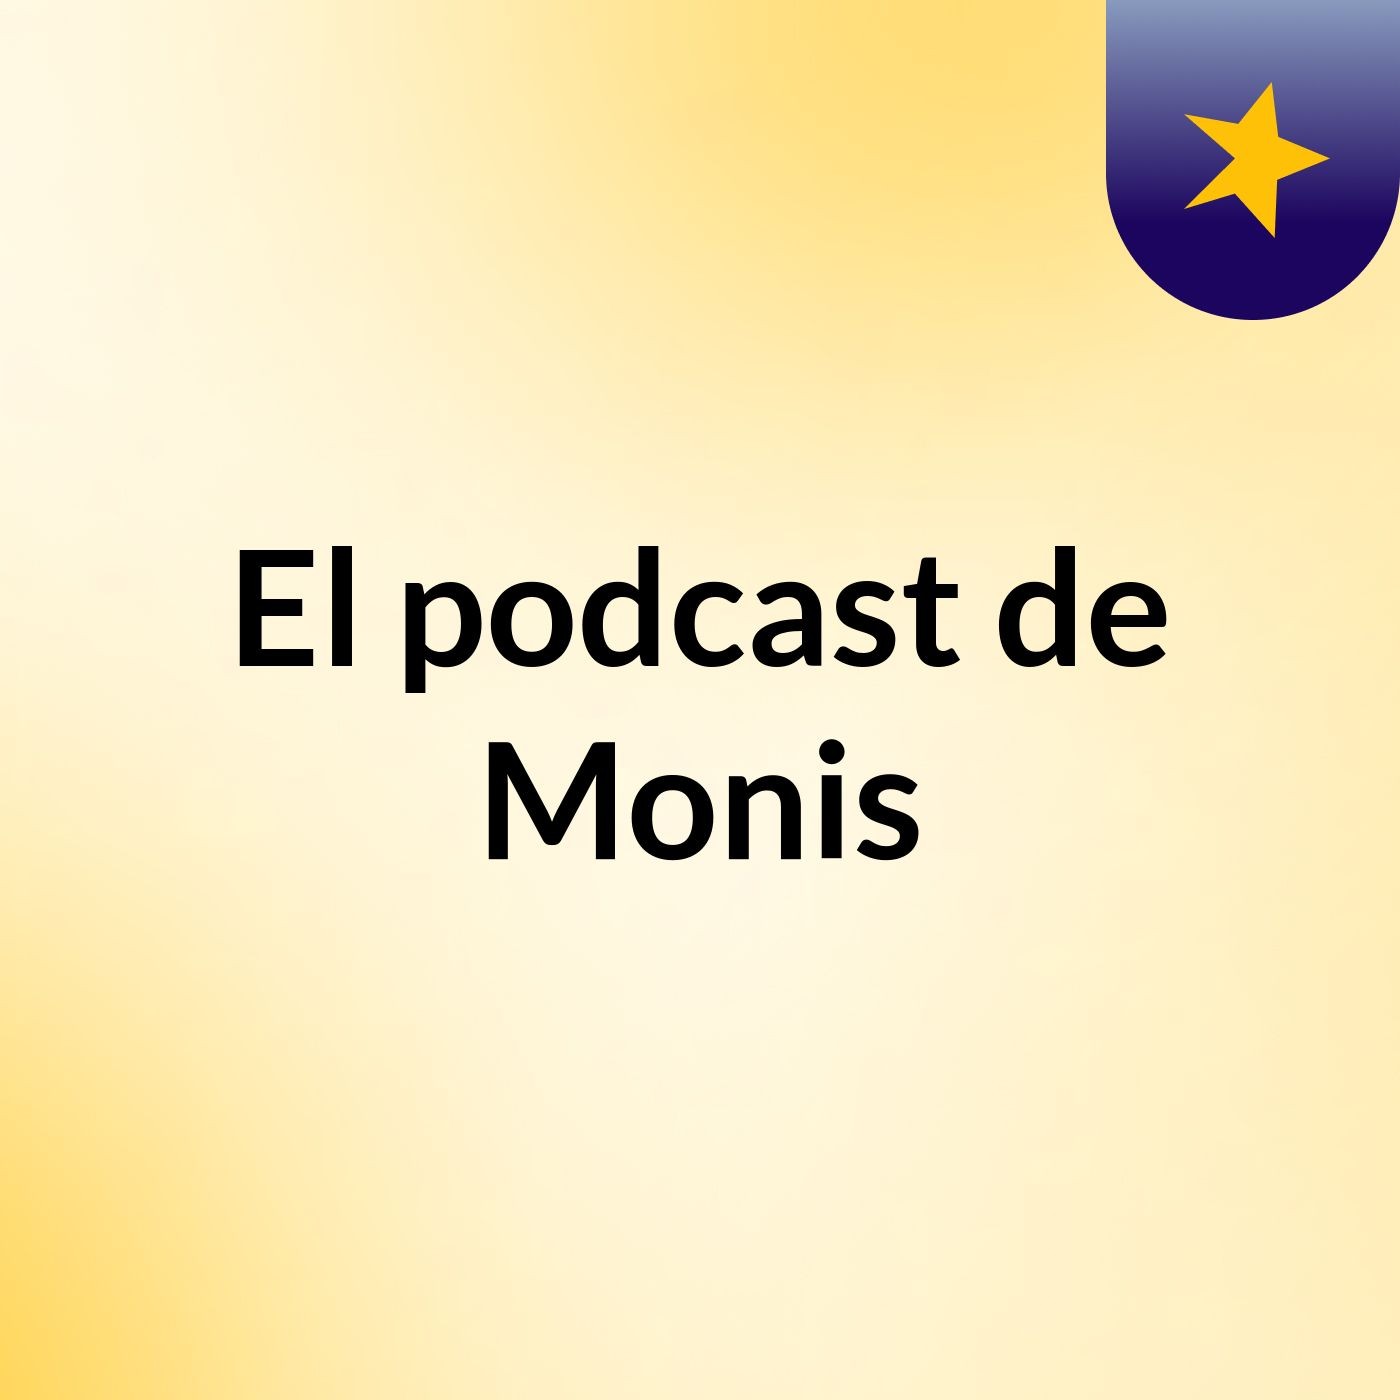 Episodio 10 - El podcast de Monis